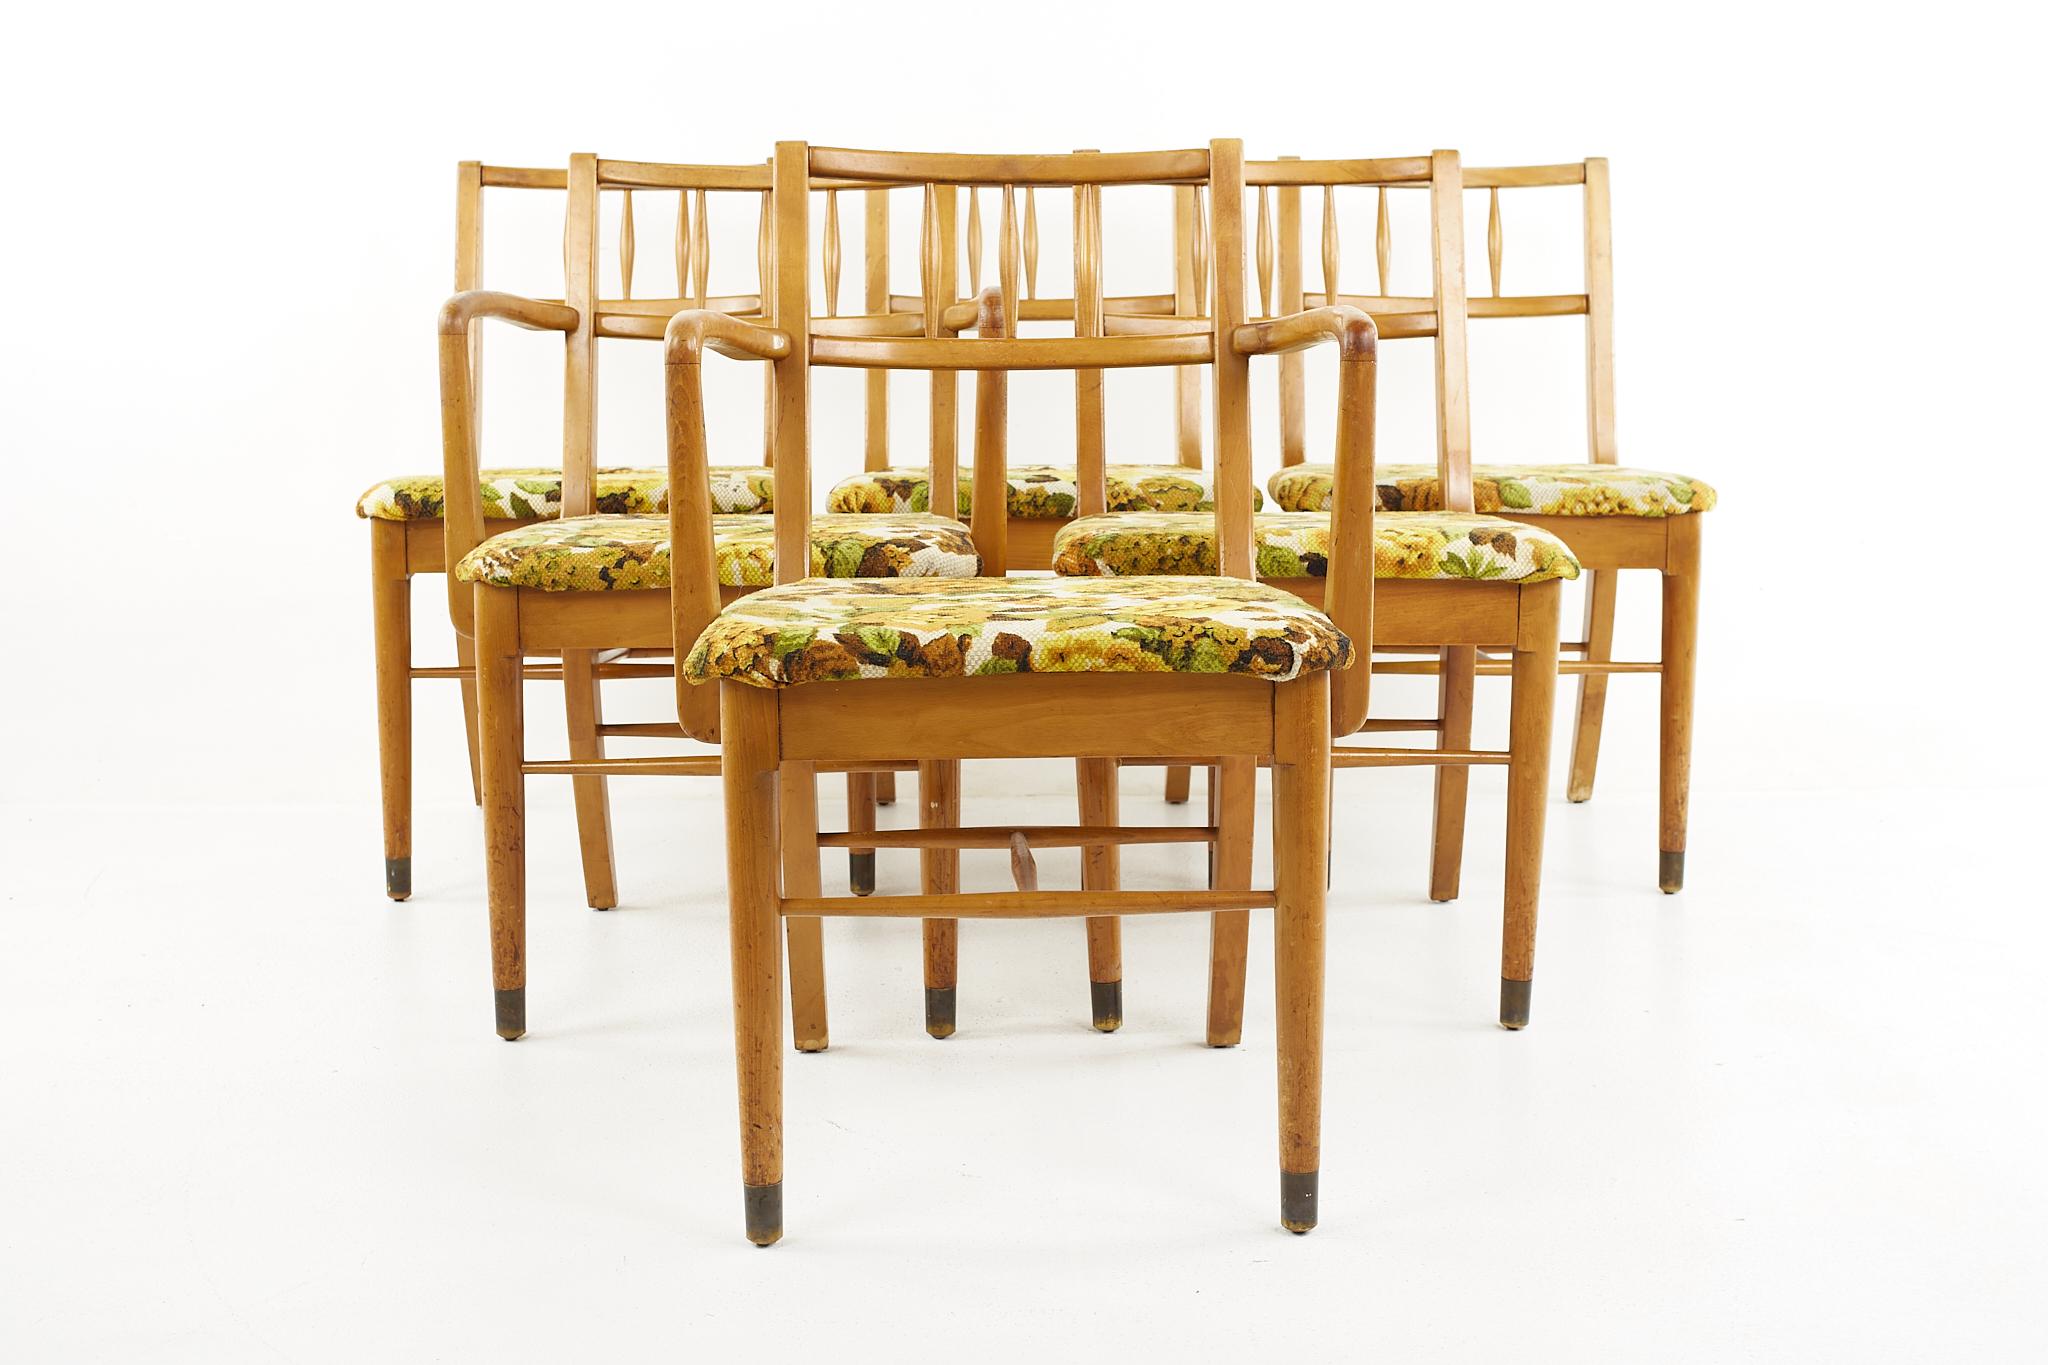 Drexel New Todays living mid-century dining chairs - set of 6

Chaque chaise mesure : 21.25 de large x 21 de profond x 33 de haut, avec une hauteur d'assise de 18 pouces et une hauteur d'accoudoir/de fauteuil de 27,5 pouces 

Tous les meubles